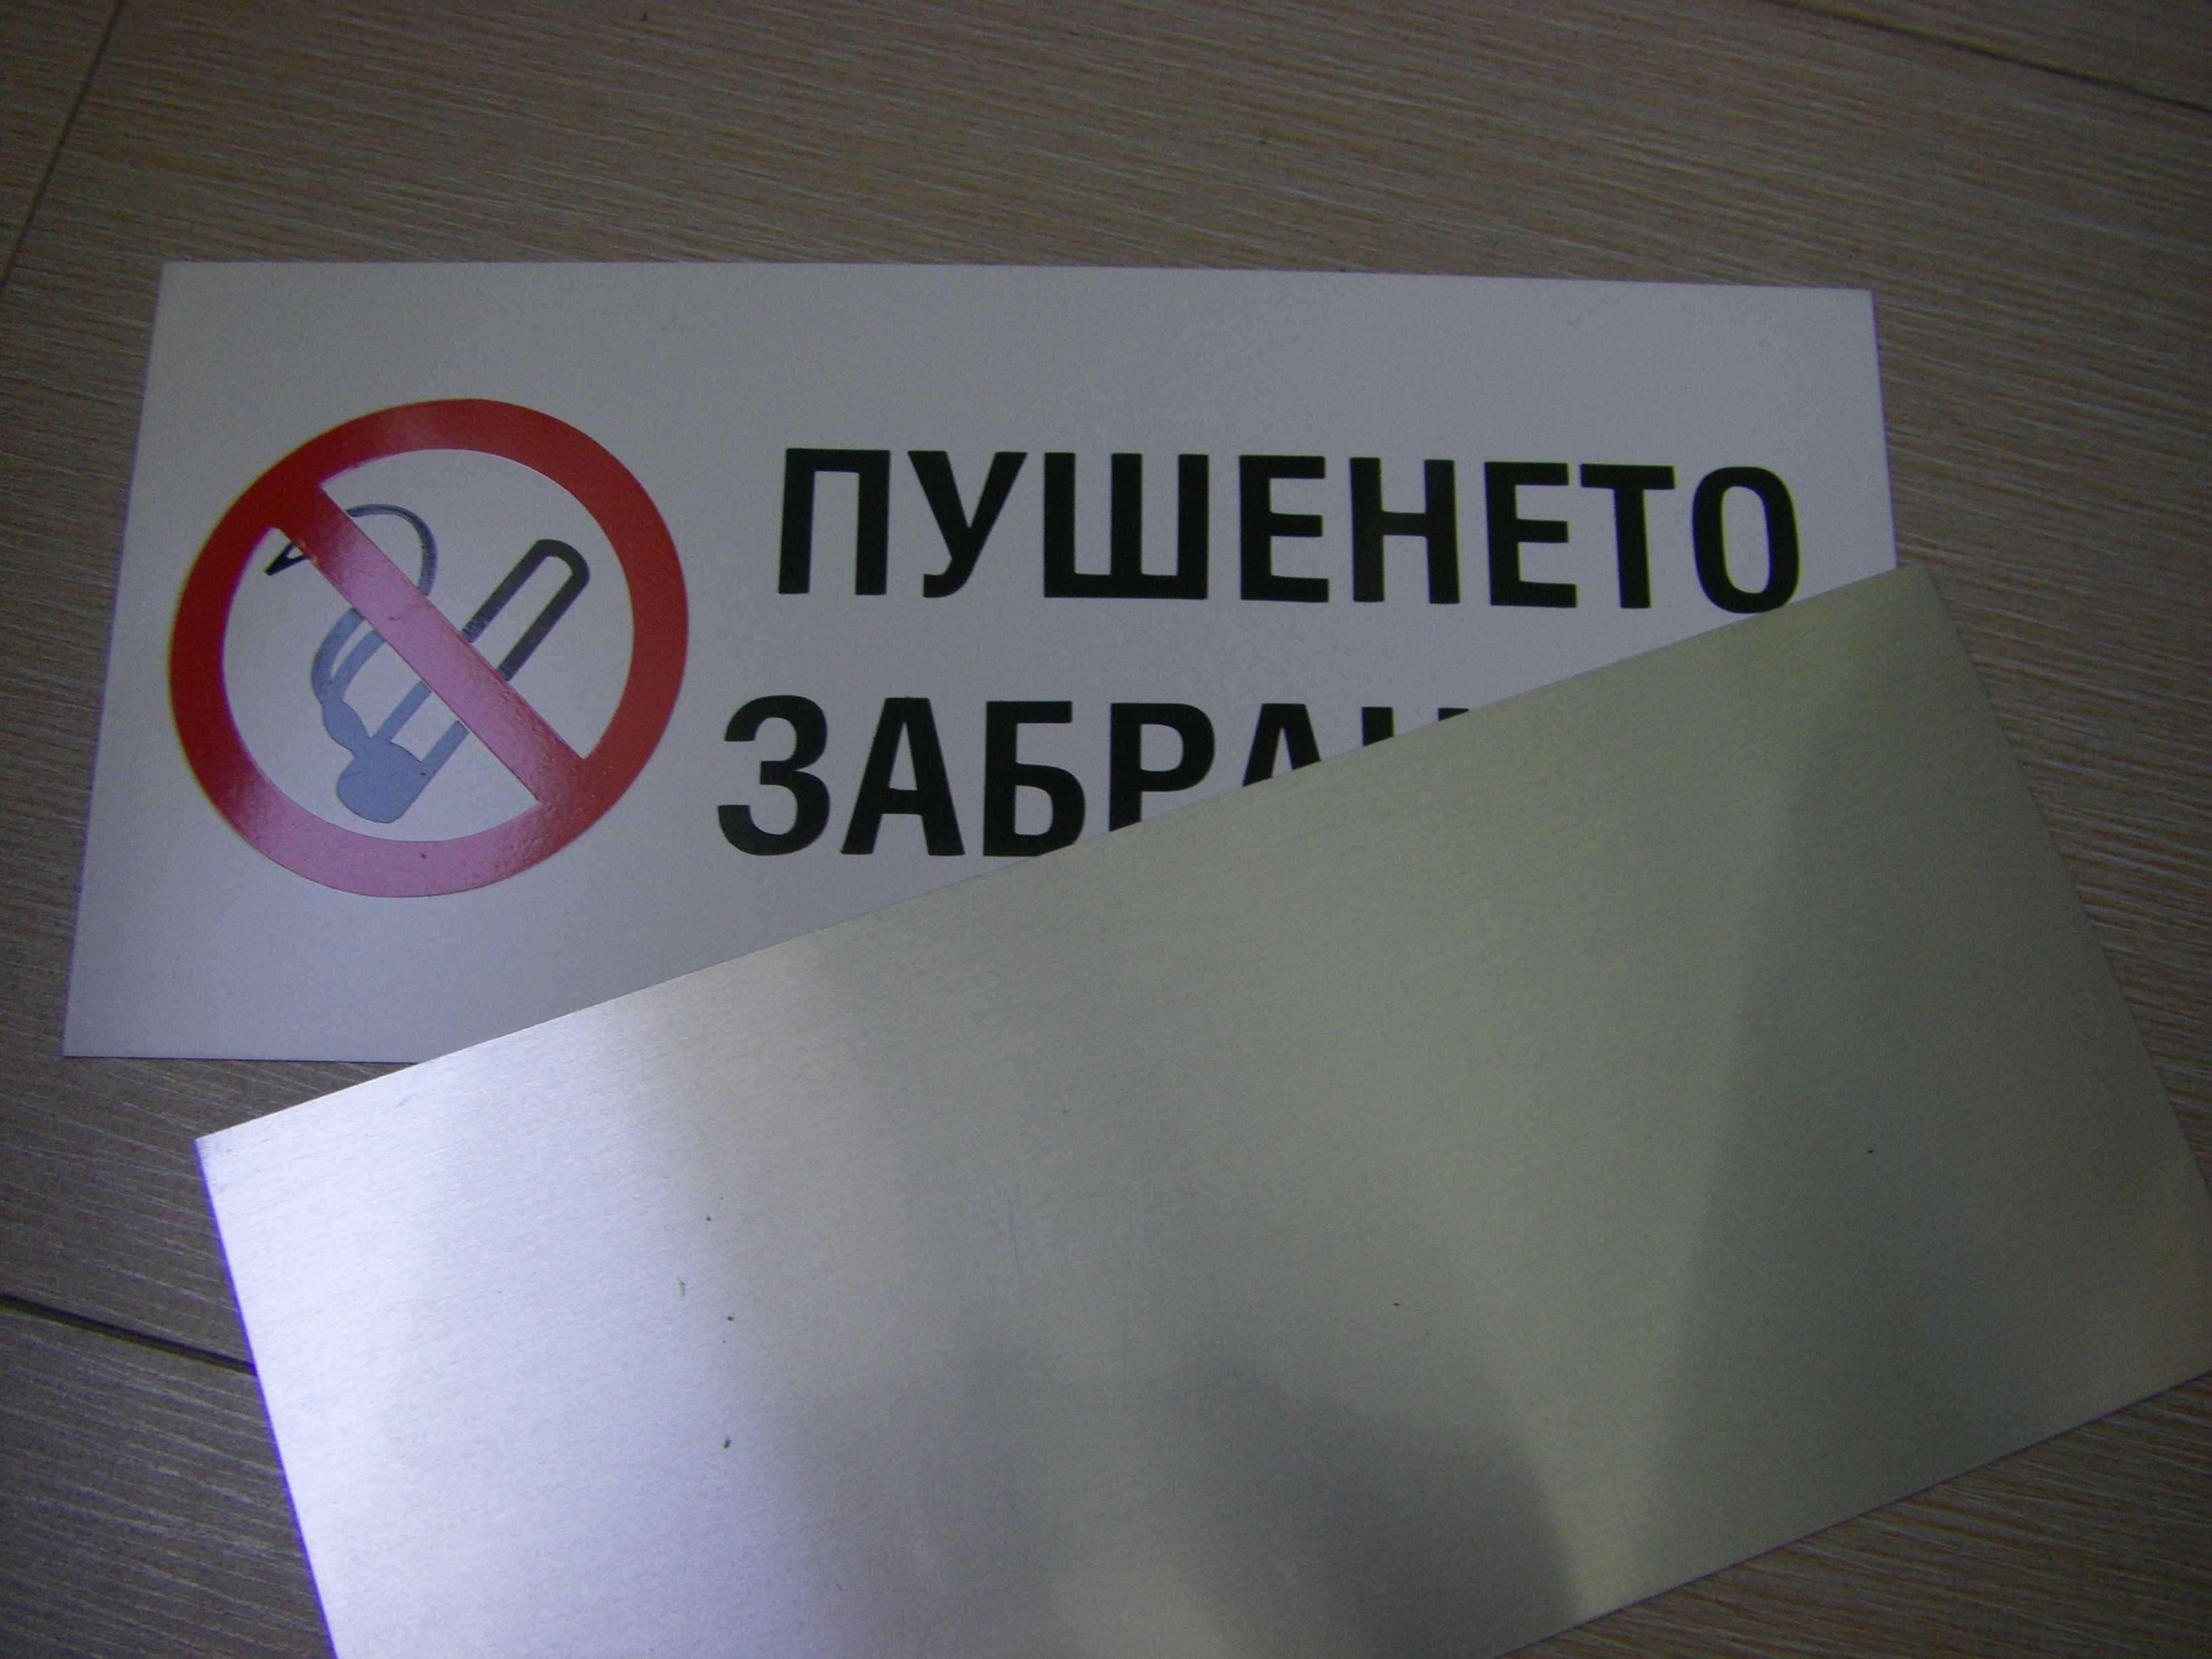 Табели /пушенето забранено/